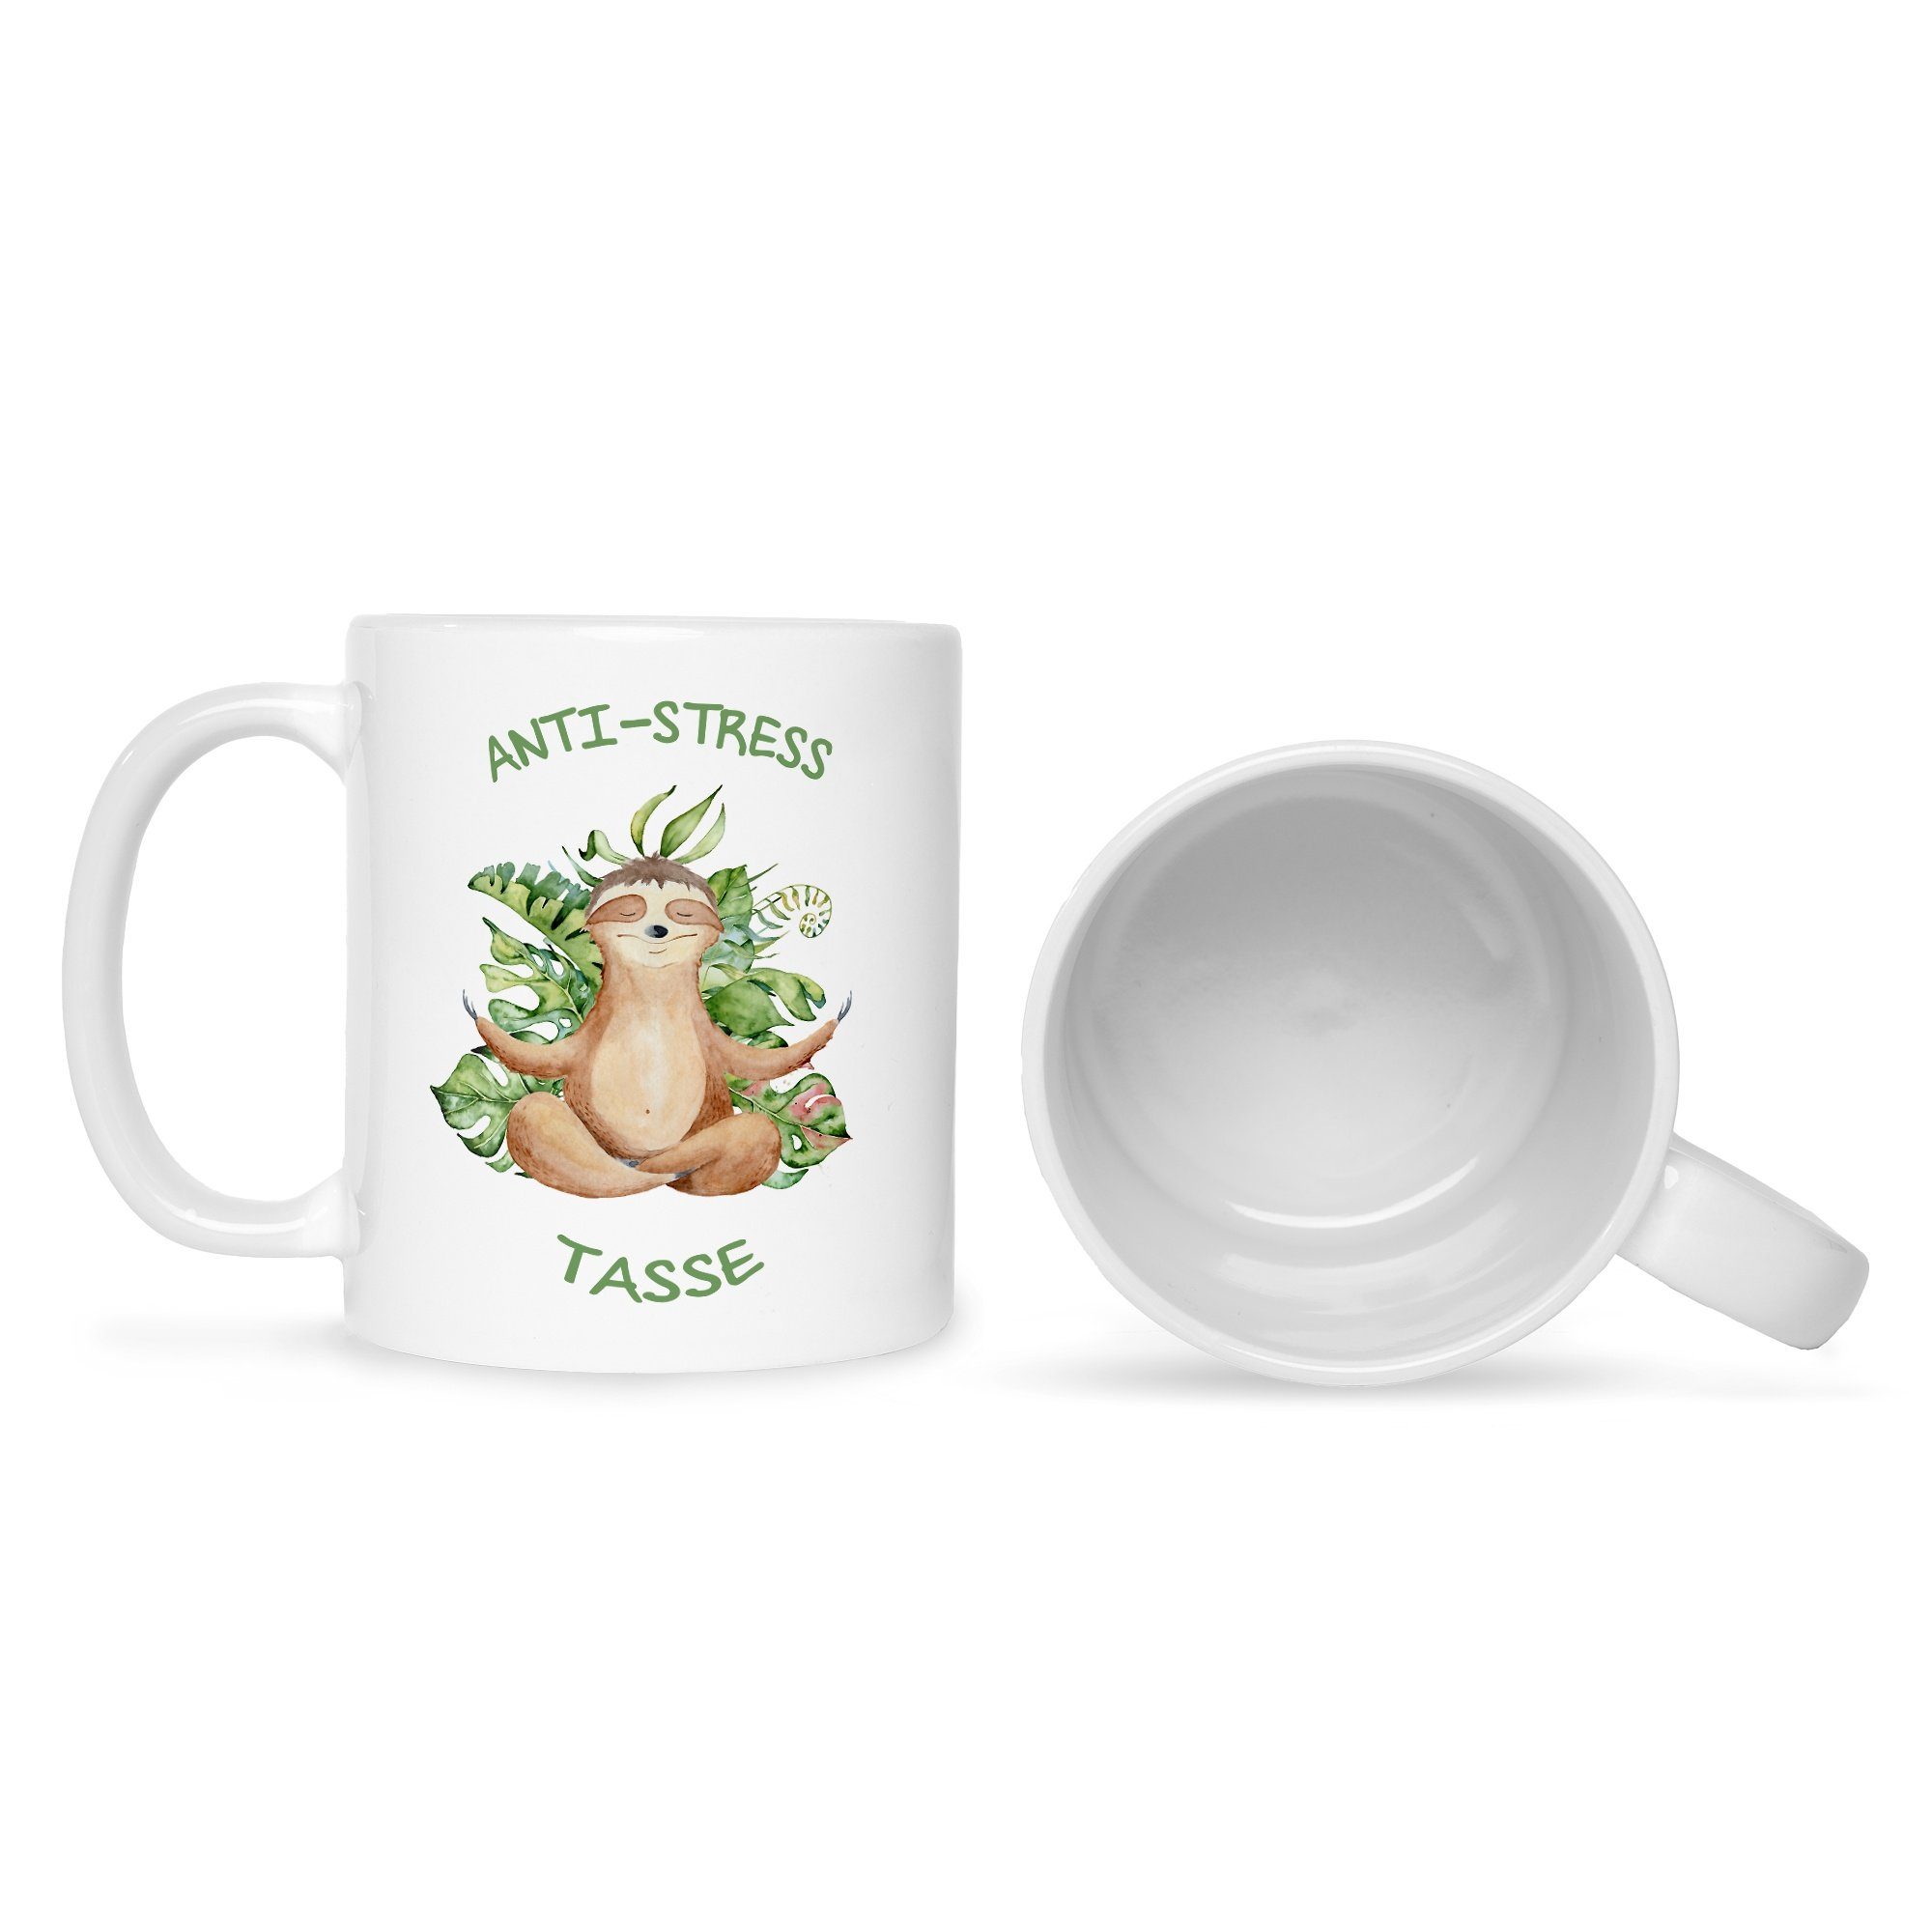 GRAVURZEILE Tasse Bedruckte Tasse mit mit Spruch Sie Ihn & Weiß Keramik, für Faultiermotiv - Spruchtasse lustige Tasse, Anti-Stress